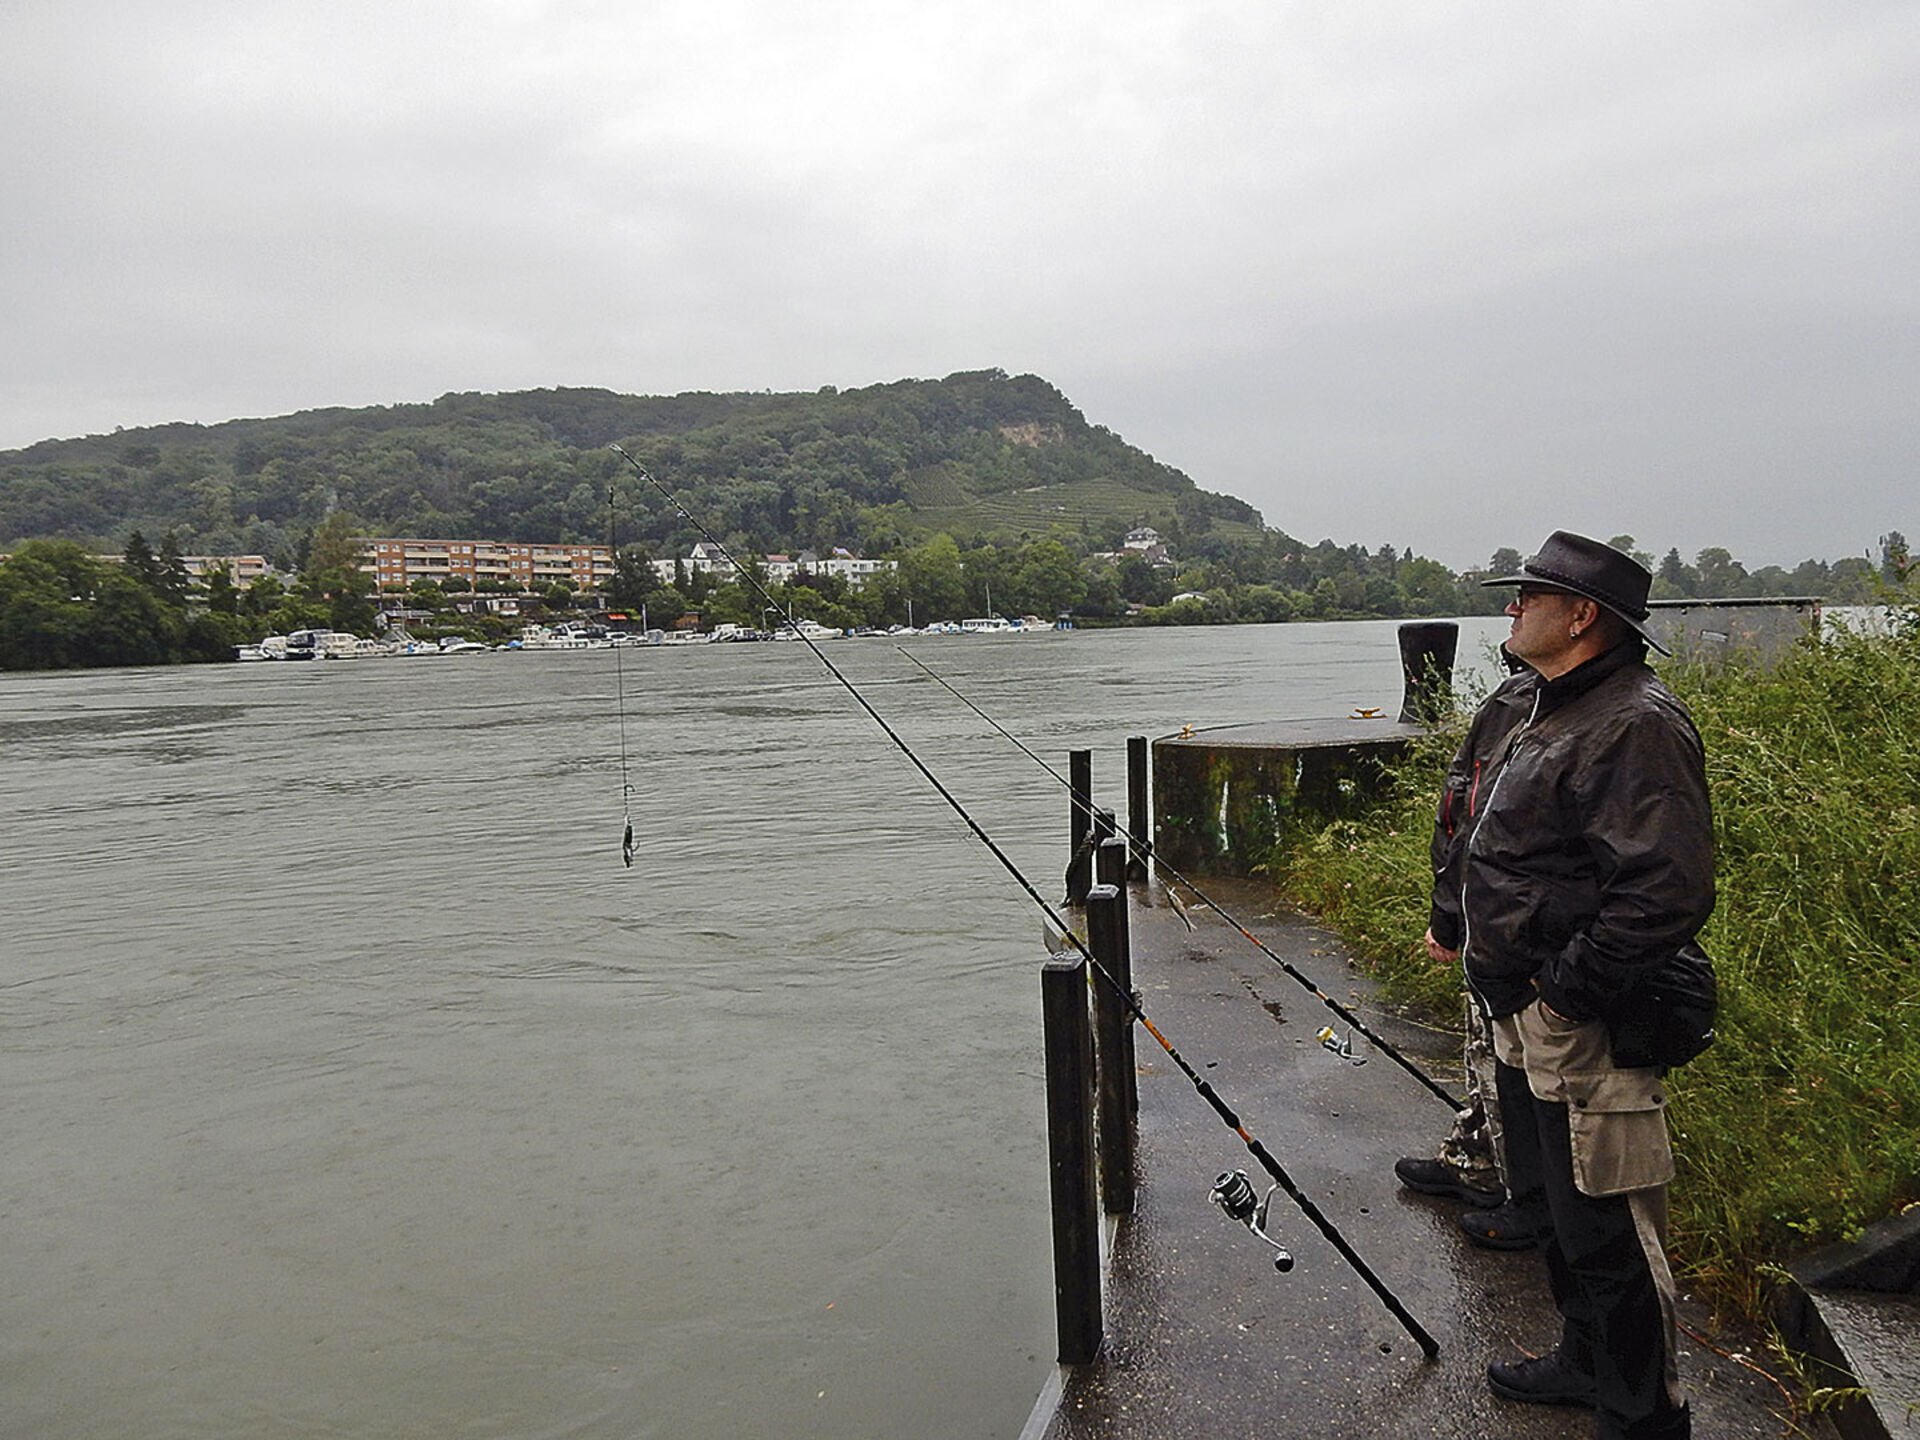  Spinnfischen auf Wels im strömenden Regen kann anstrengend sein: Daniel Madörin und sein Fischerkumpel Alain Bernet (verdeckt) legen auf der Kraftwerkinsel Birsfelden eine Pause ein.  